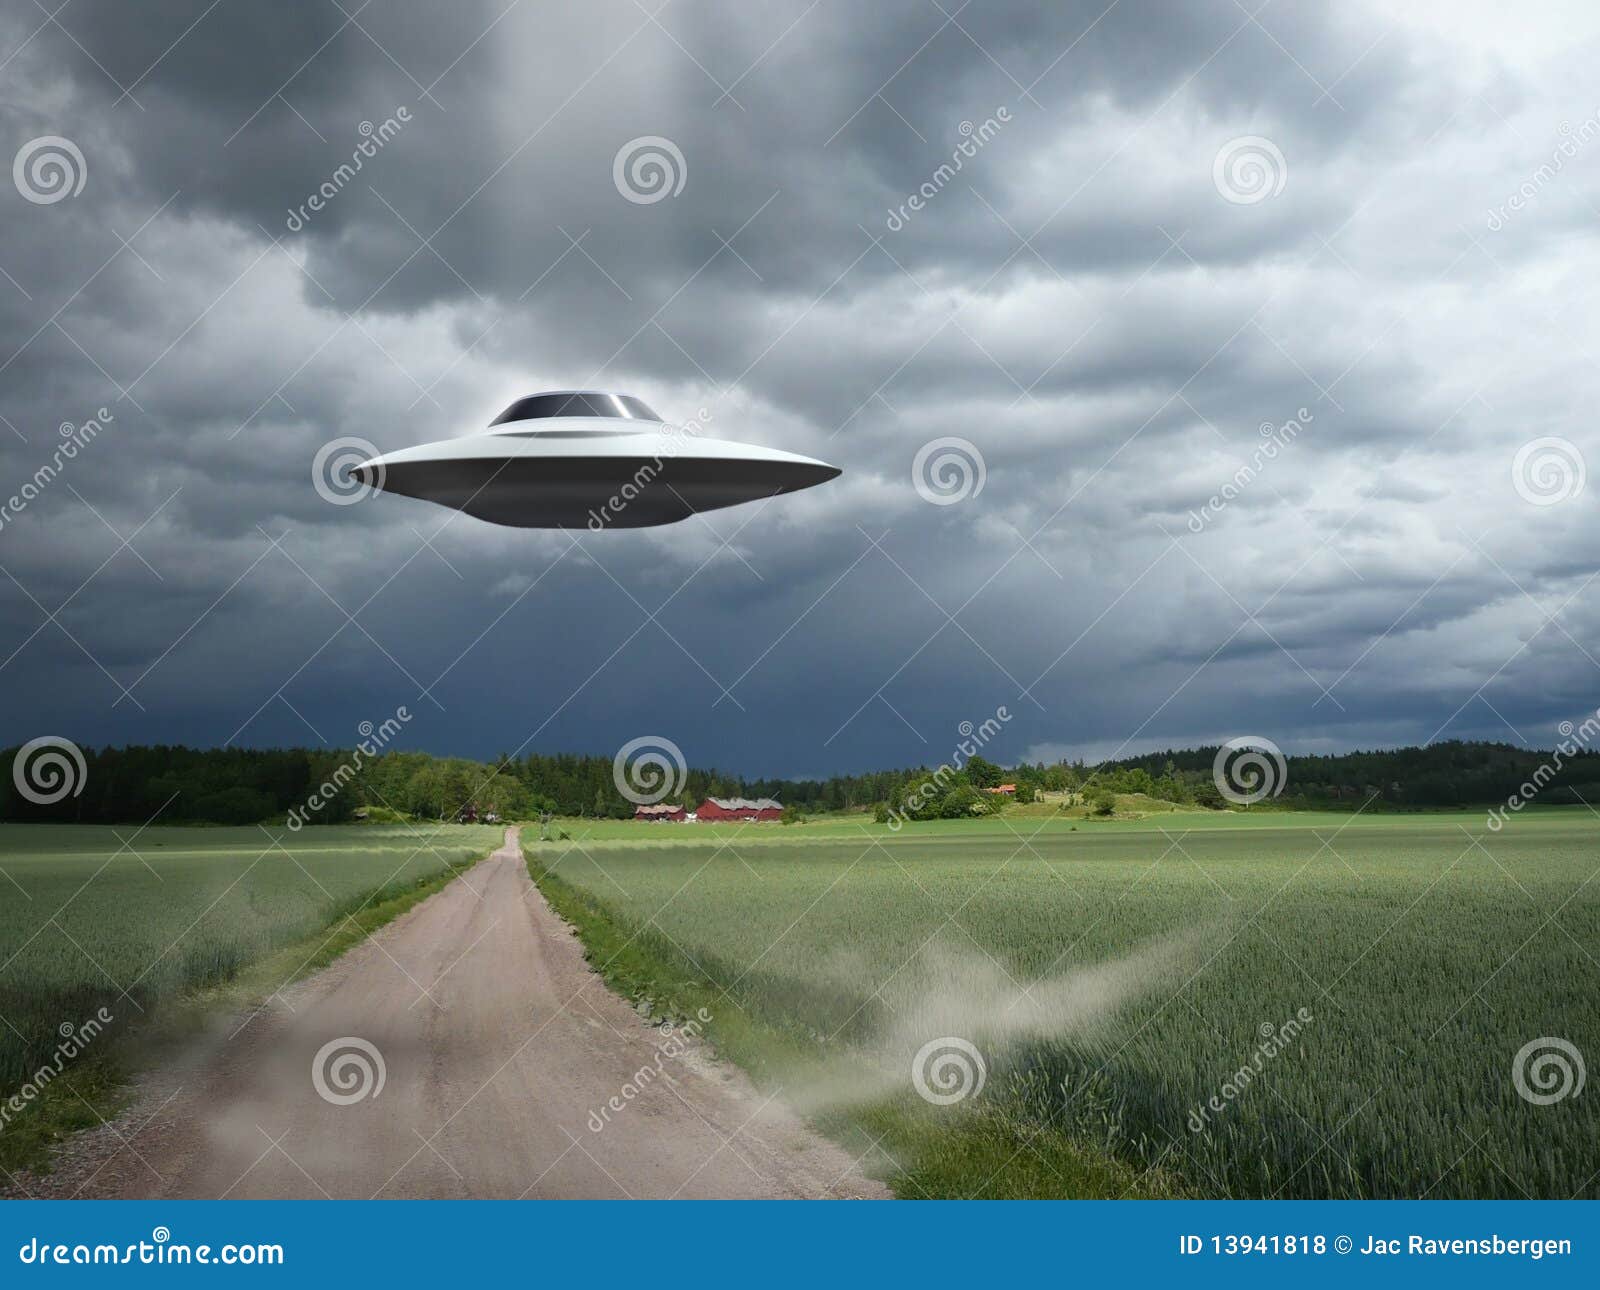 alien aircraft ufo landing